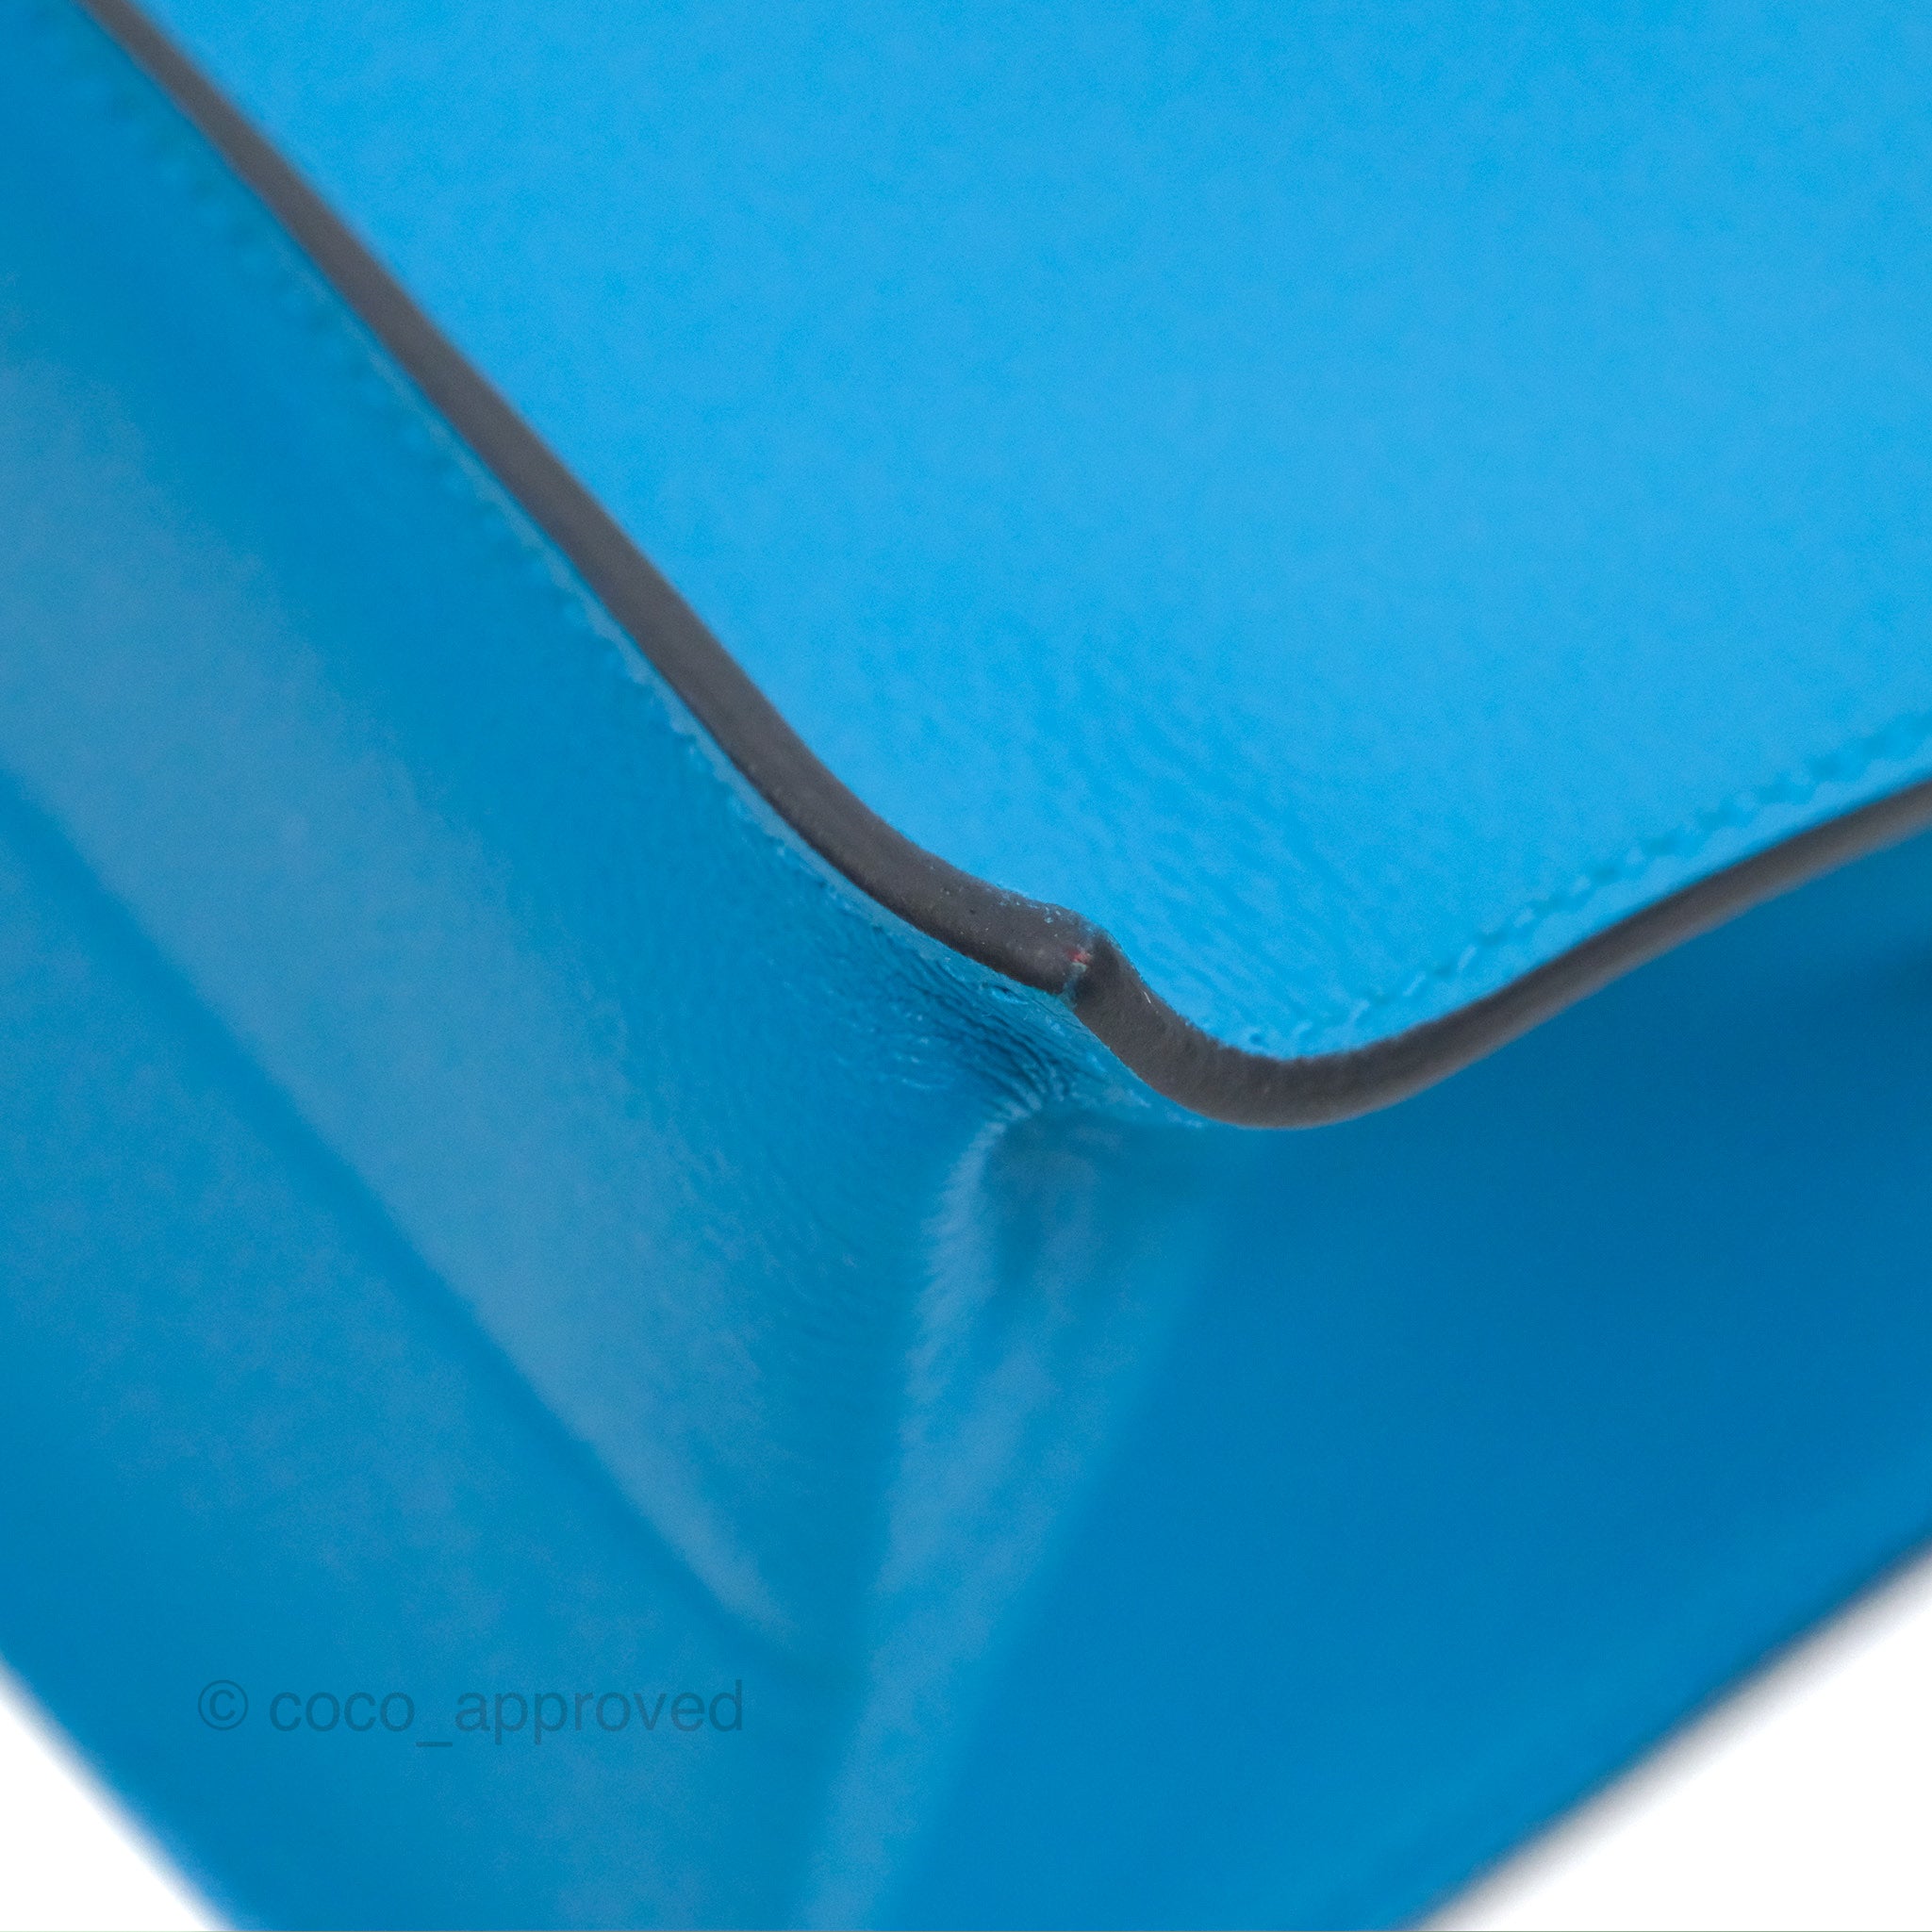 Bolide 27 Blue Glacier Epsom Leather Bag